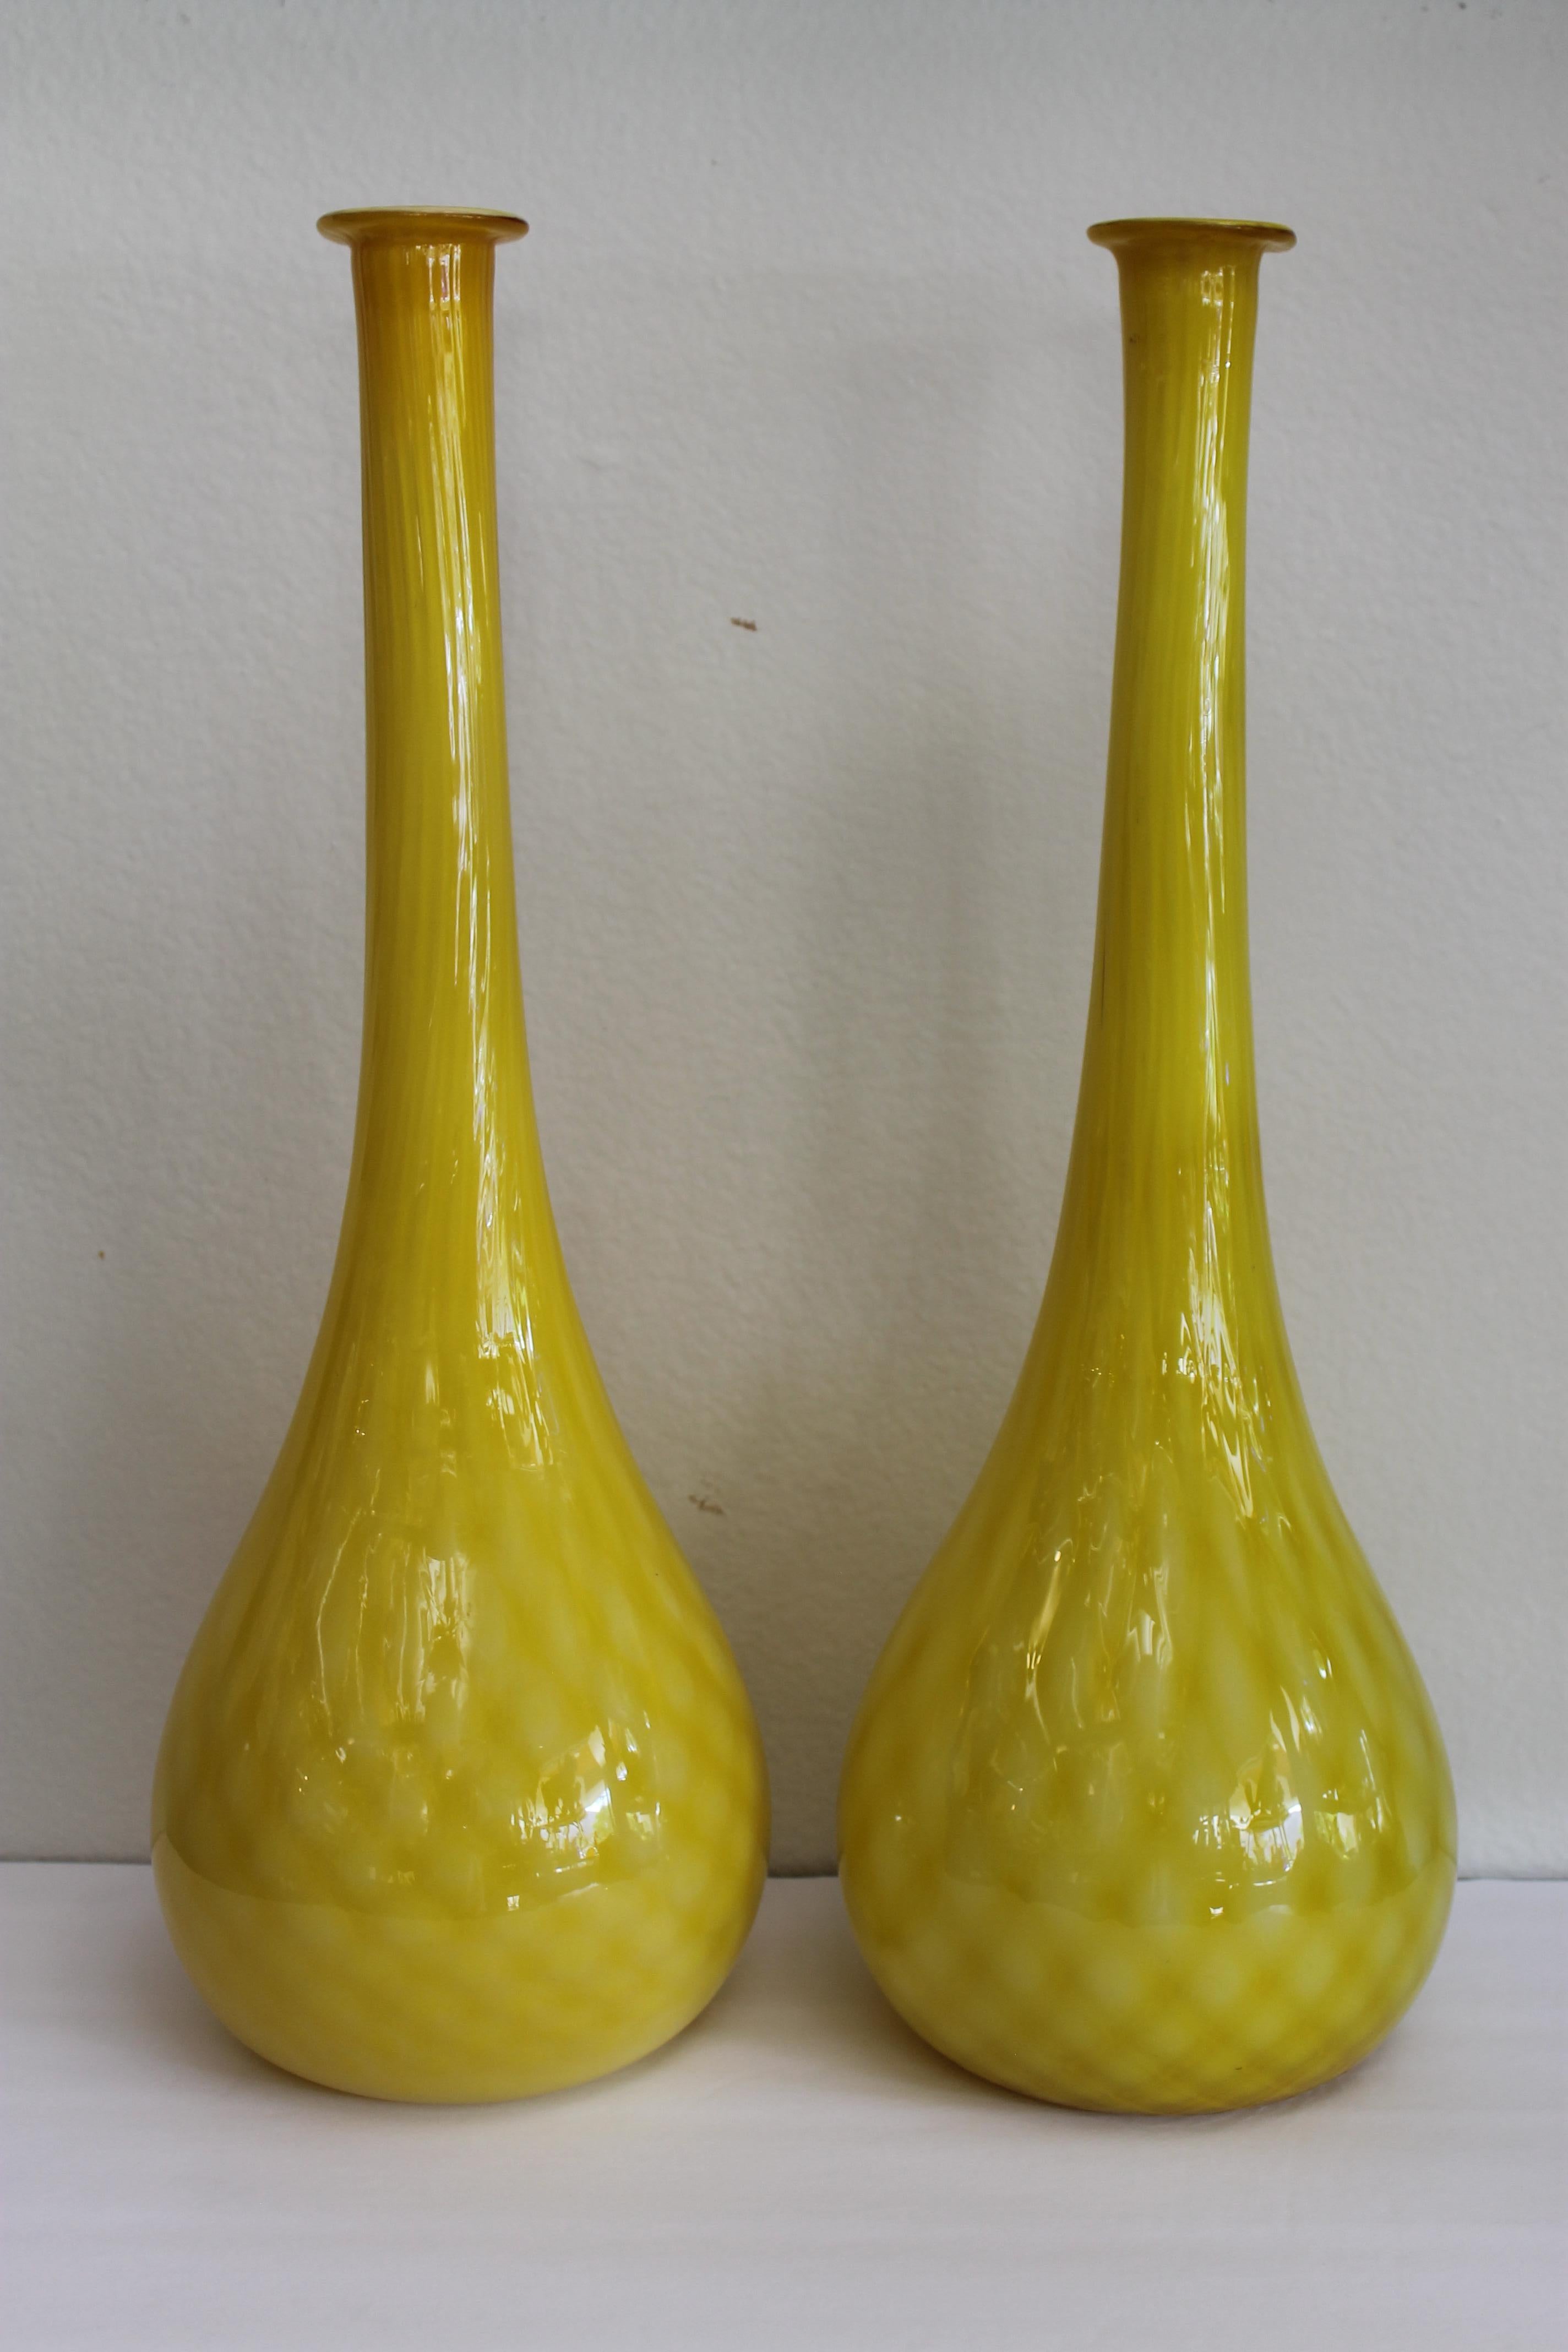 Paar gelbe Vasen aus Muranoglas mit Rautenmuster. Die Vasen sind etwa 20